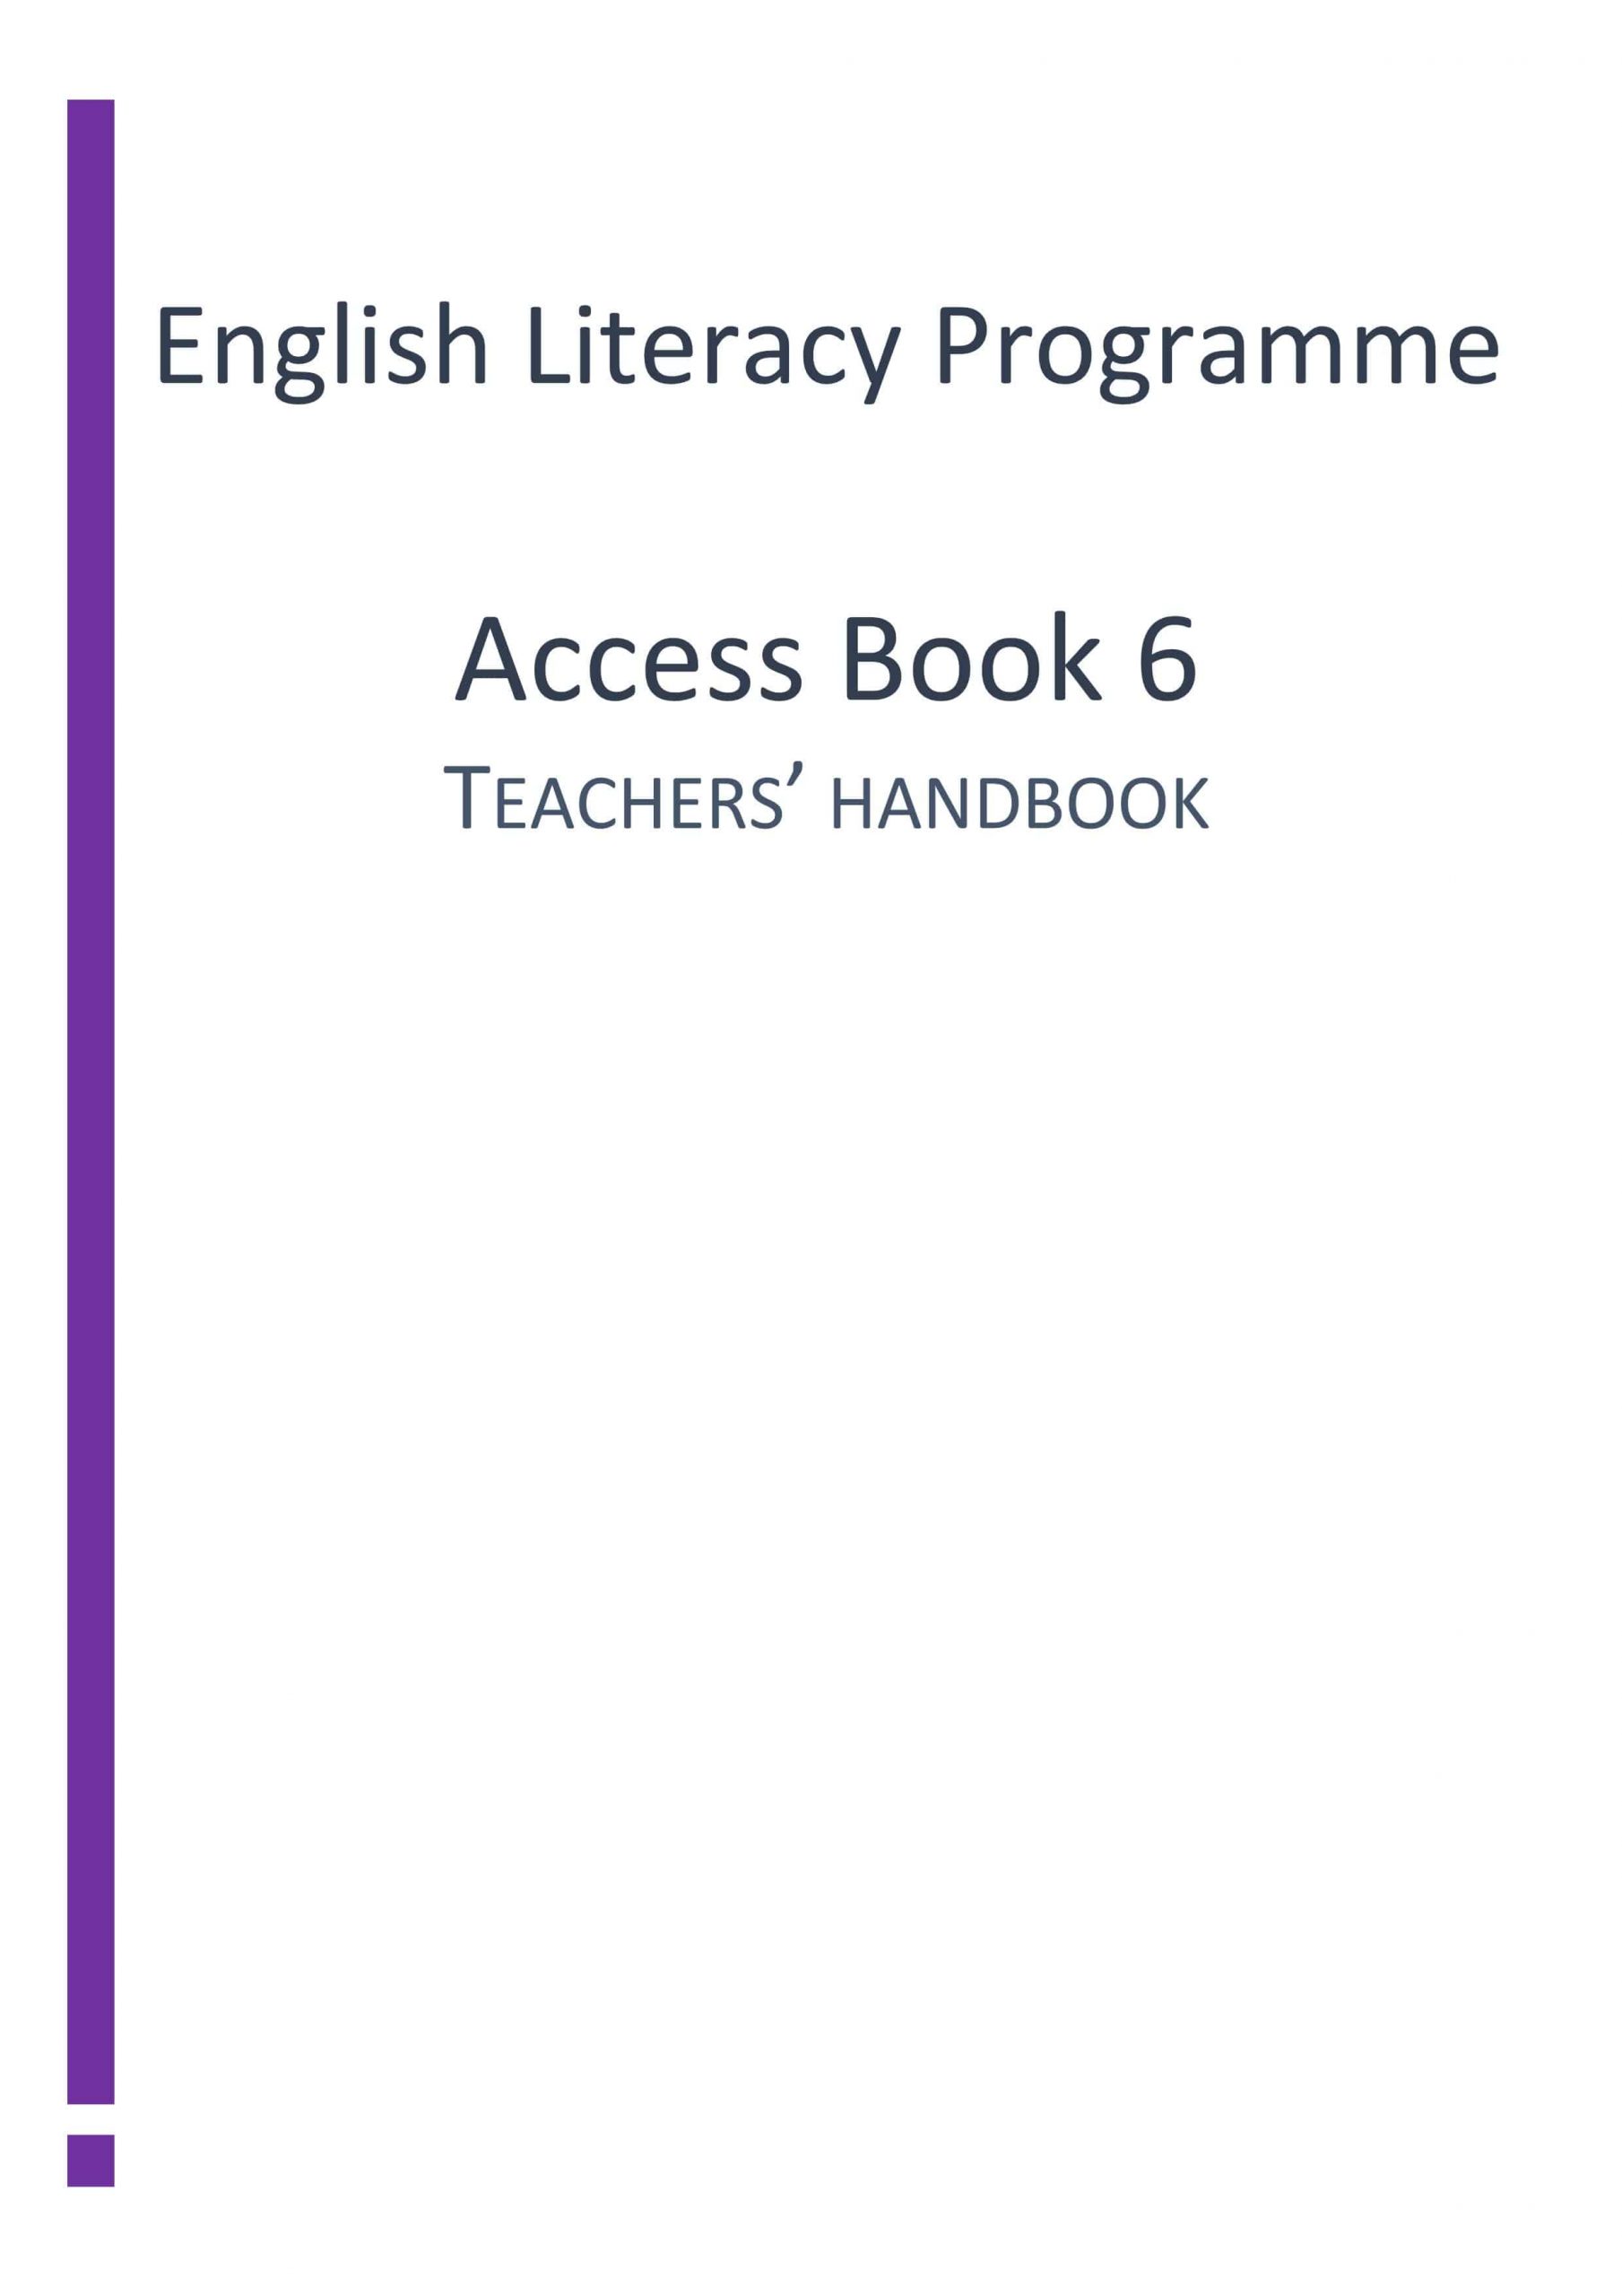 دليل المعلم Access Book الفصل الدراسي الثاني الصف السادس مادة اللغة الانجليزية 